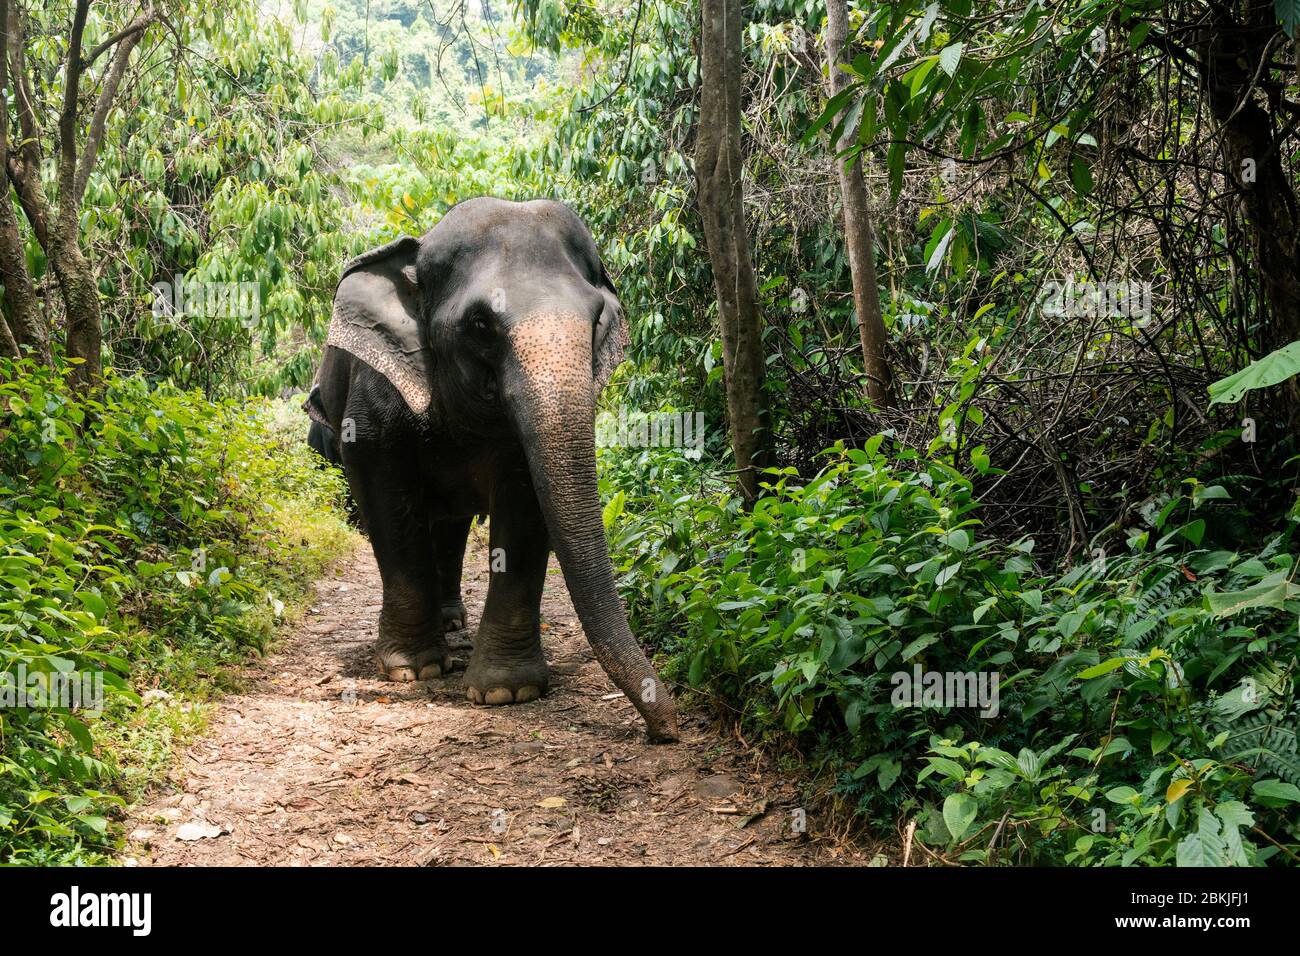 Thailand, province of Phuket, Phang Nga Elephant Park Stock Photo